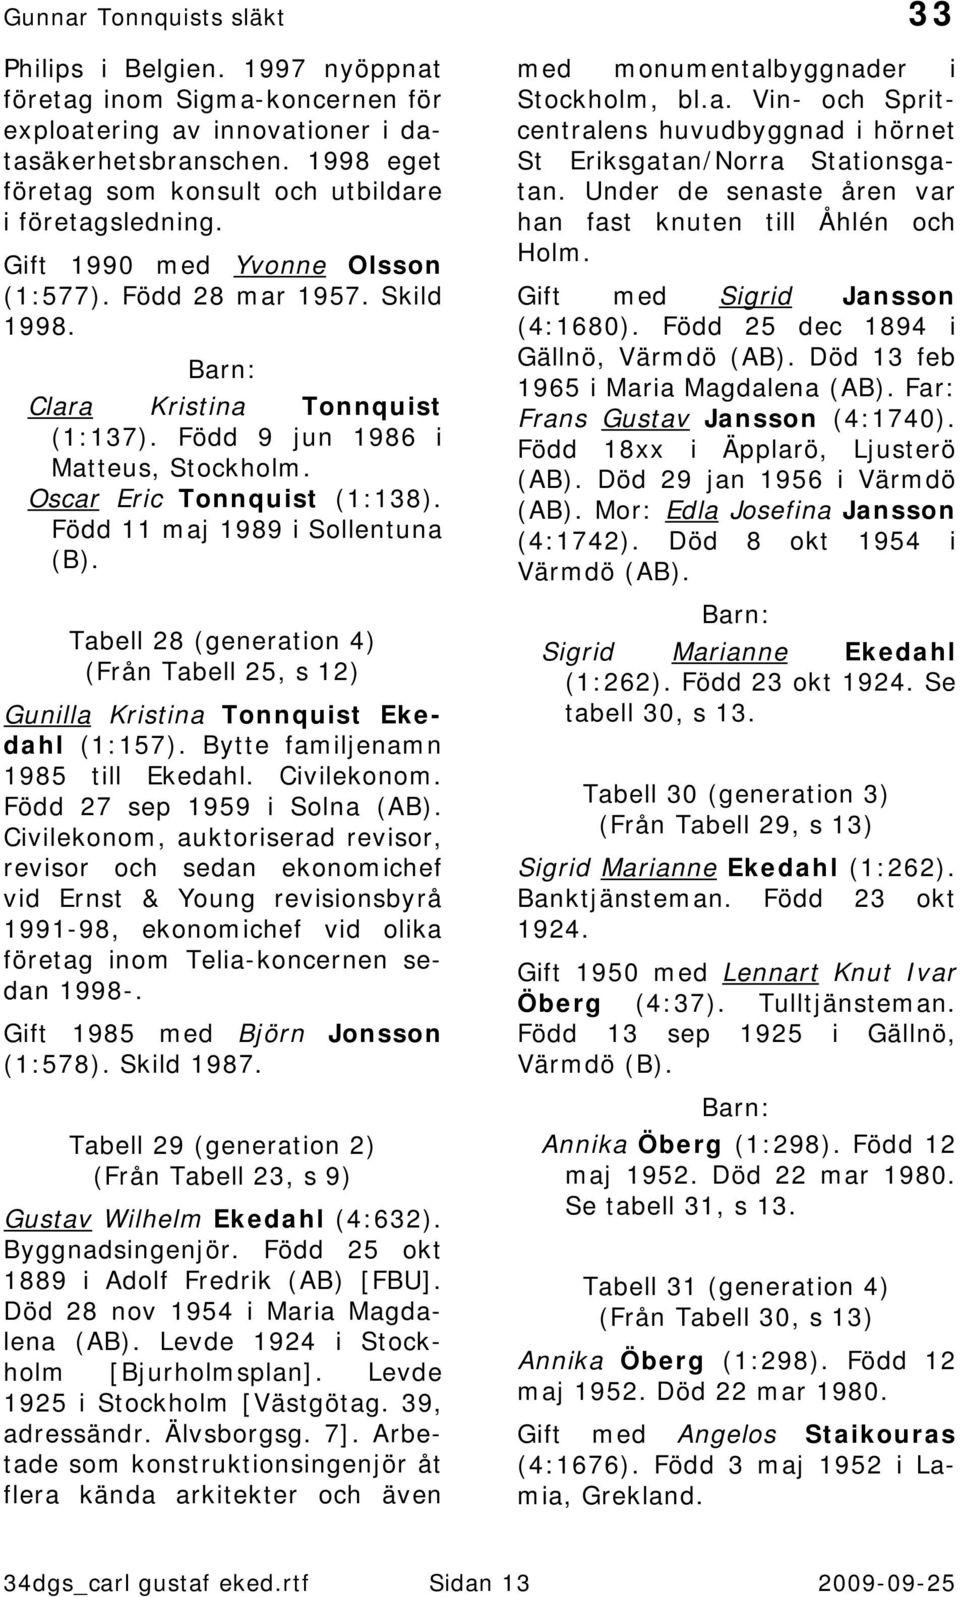 Född 11 maj 1989 i Sollentuna (B). Tabell 28 (generation 4) (Från Tabell 25, s 12) Gunilla Kristina Tonnquist Ekedahl (1:157). Bytte familjenamn 1985 till Ekedahl. Civilekonom.